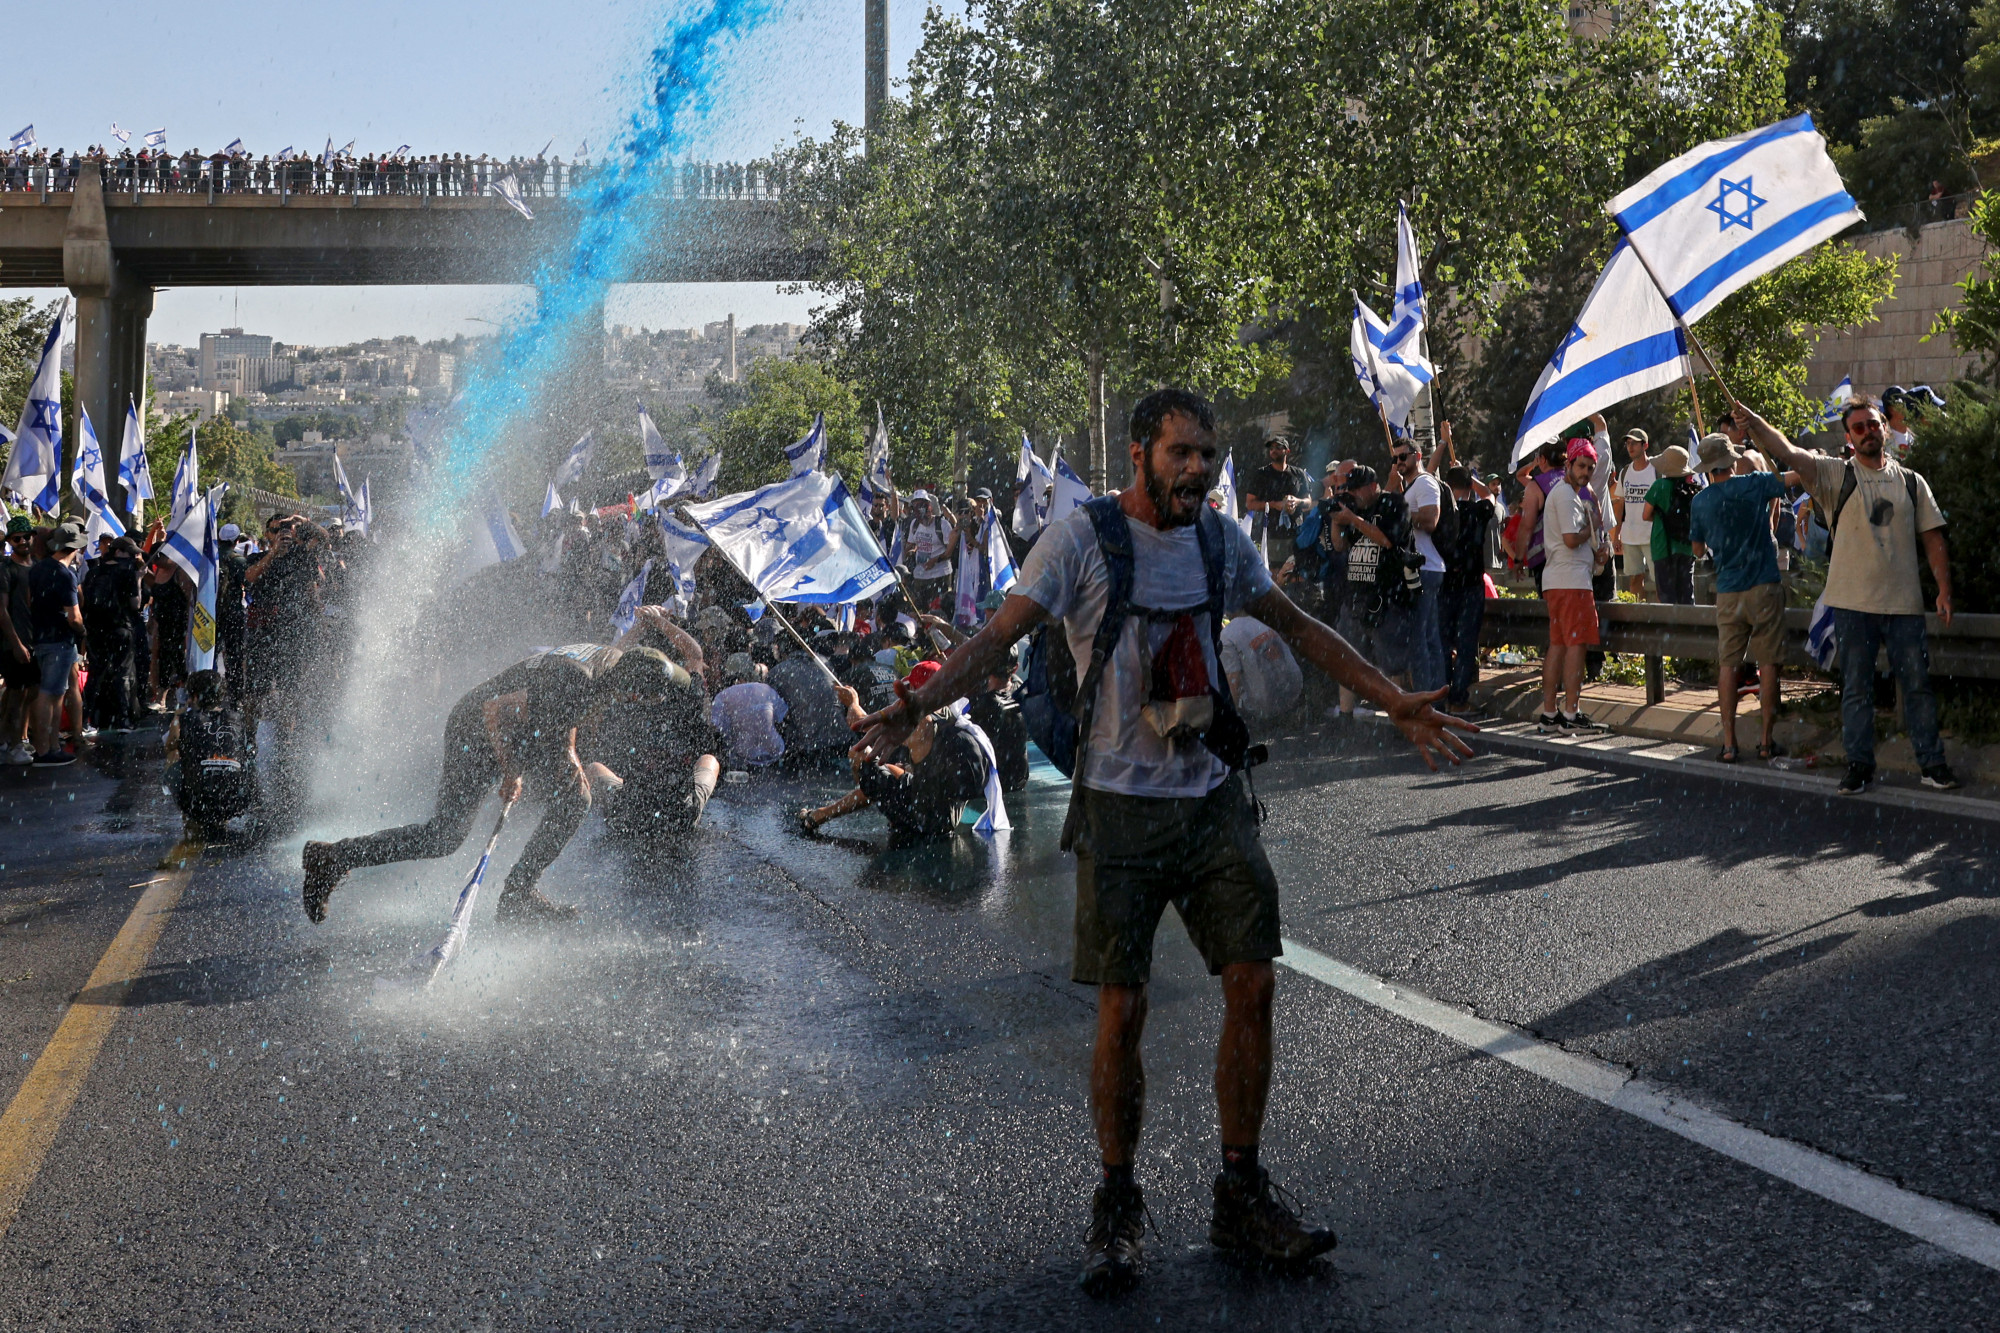 Izrael megtette az első lépést az autokrácia felé